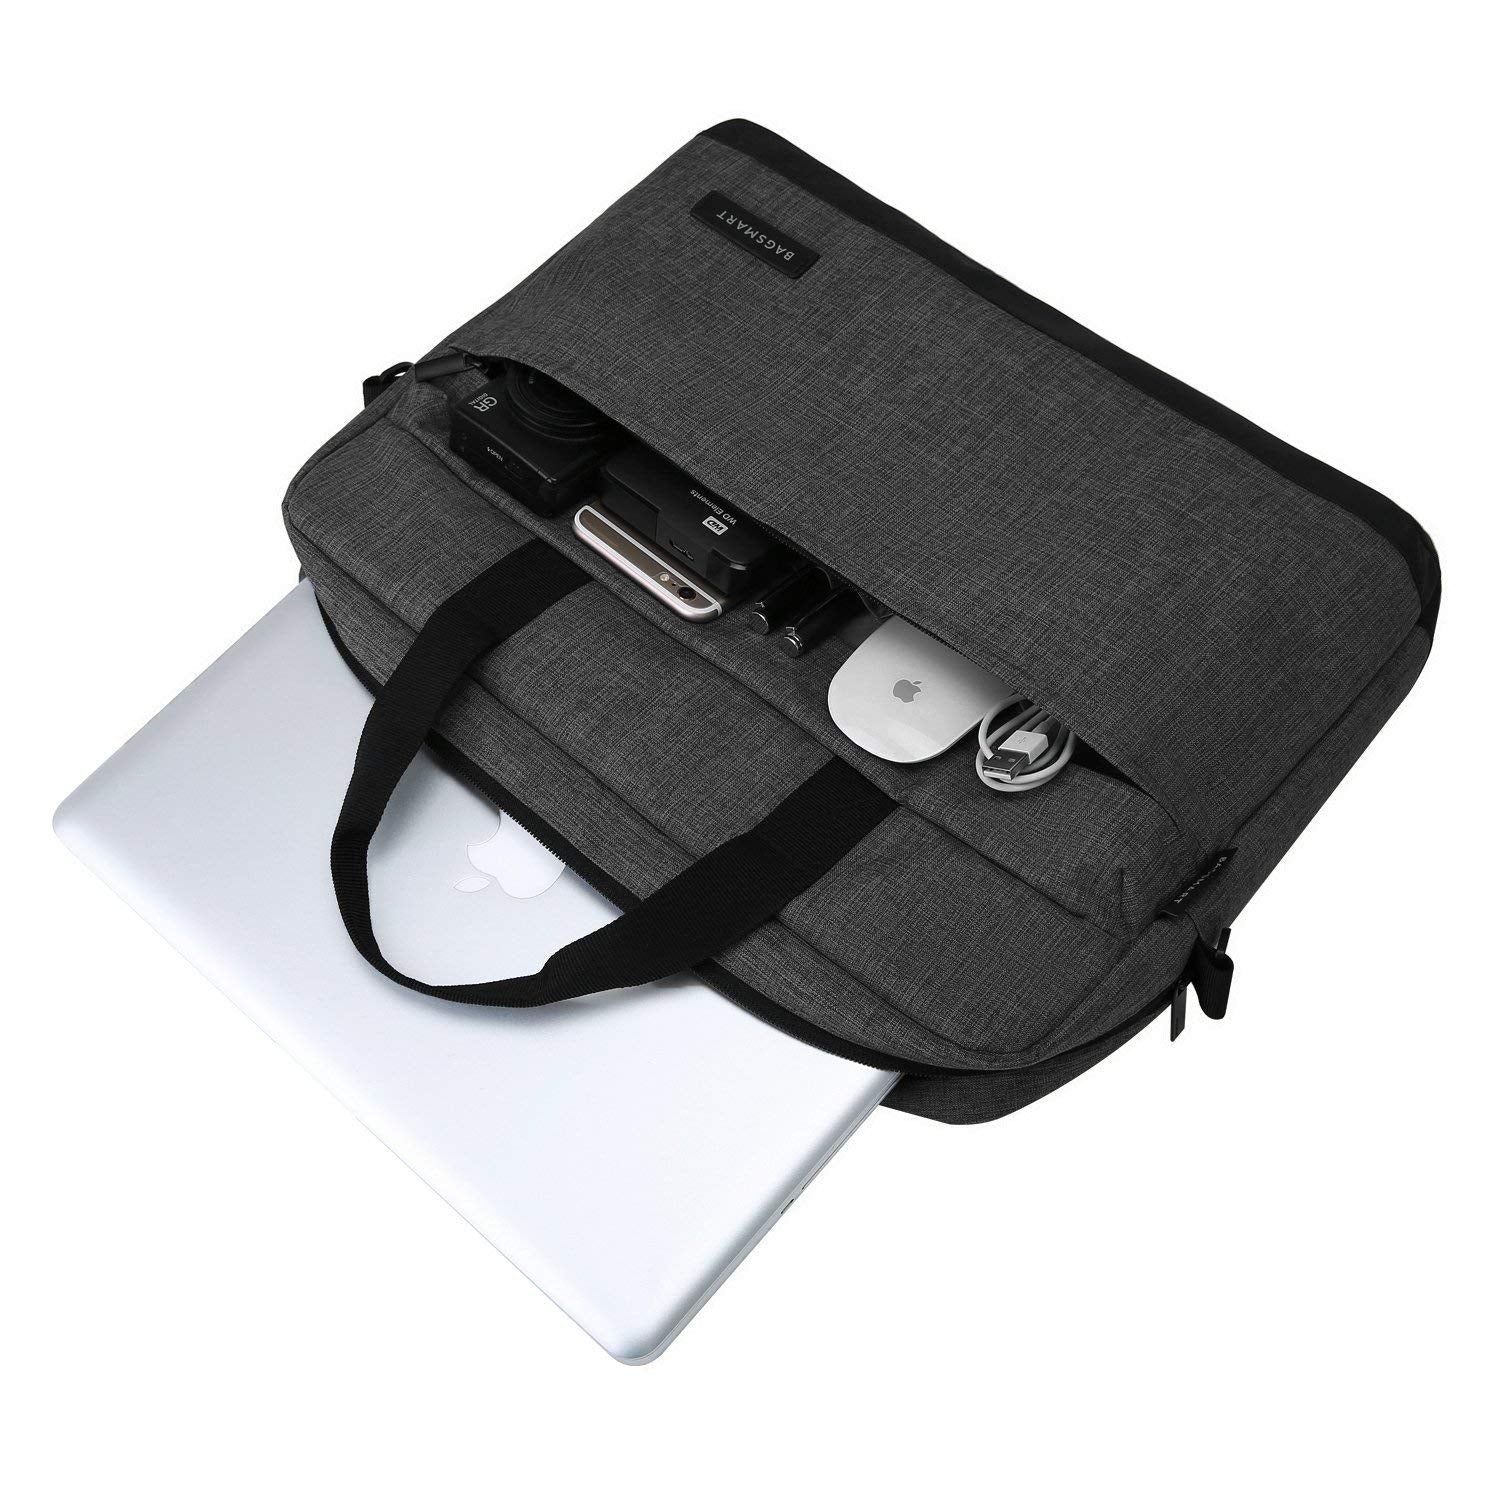 15.6 inch Minimalist Laptop Bag by Bagsmart - yrGear Australia